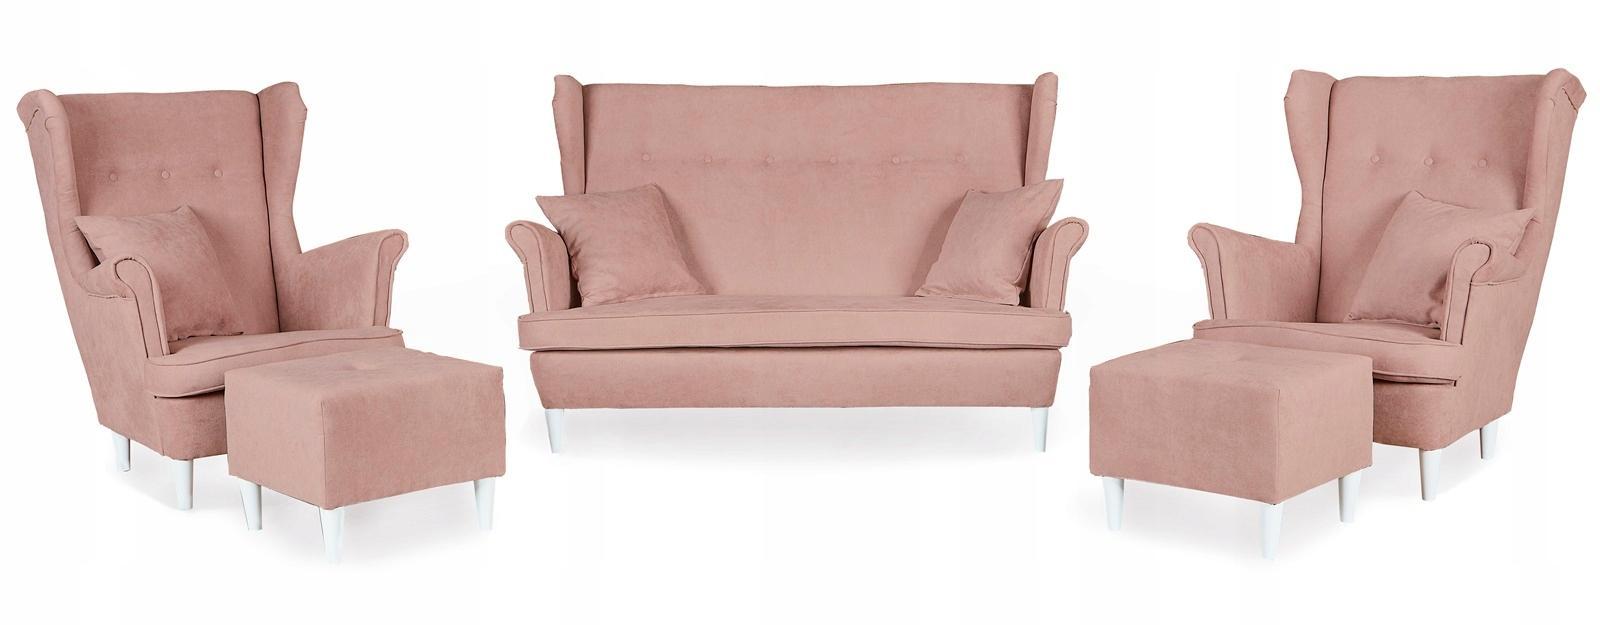 Zestaw wypoczynkowy mebli ARI 149x104x92 cm uszak sofa fotele pufy do salonu Enjoy pudrowy róż nr. 1